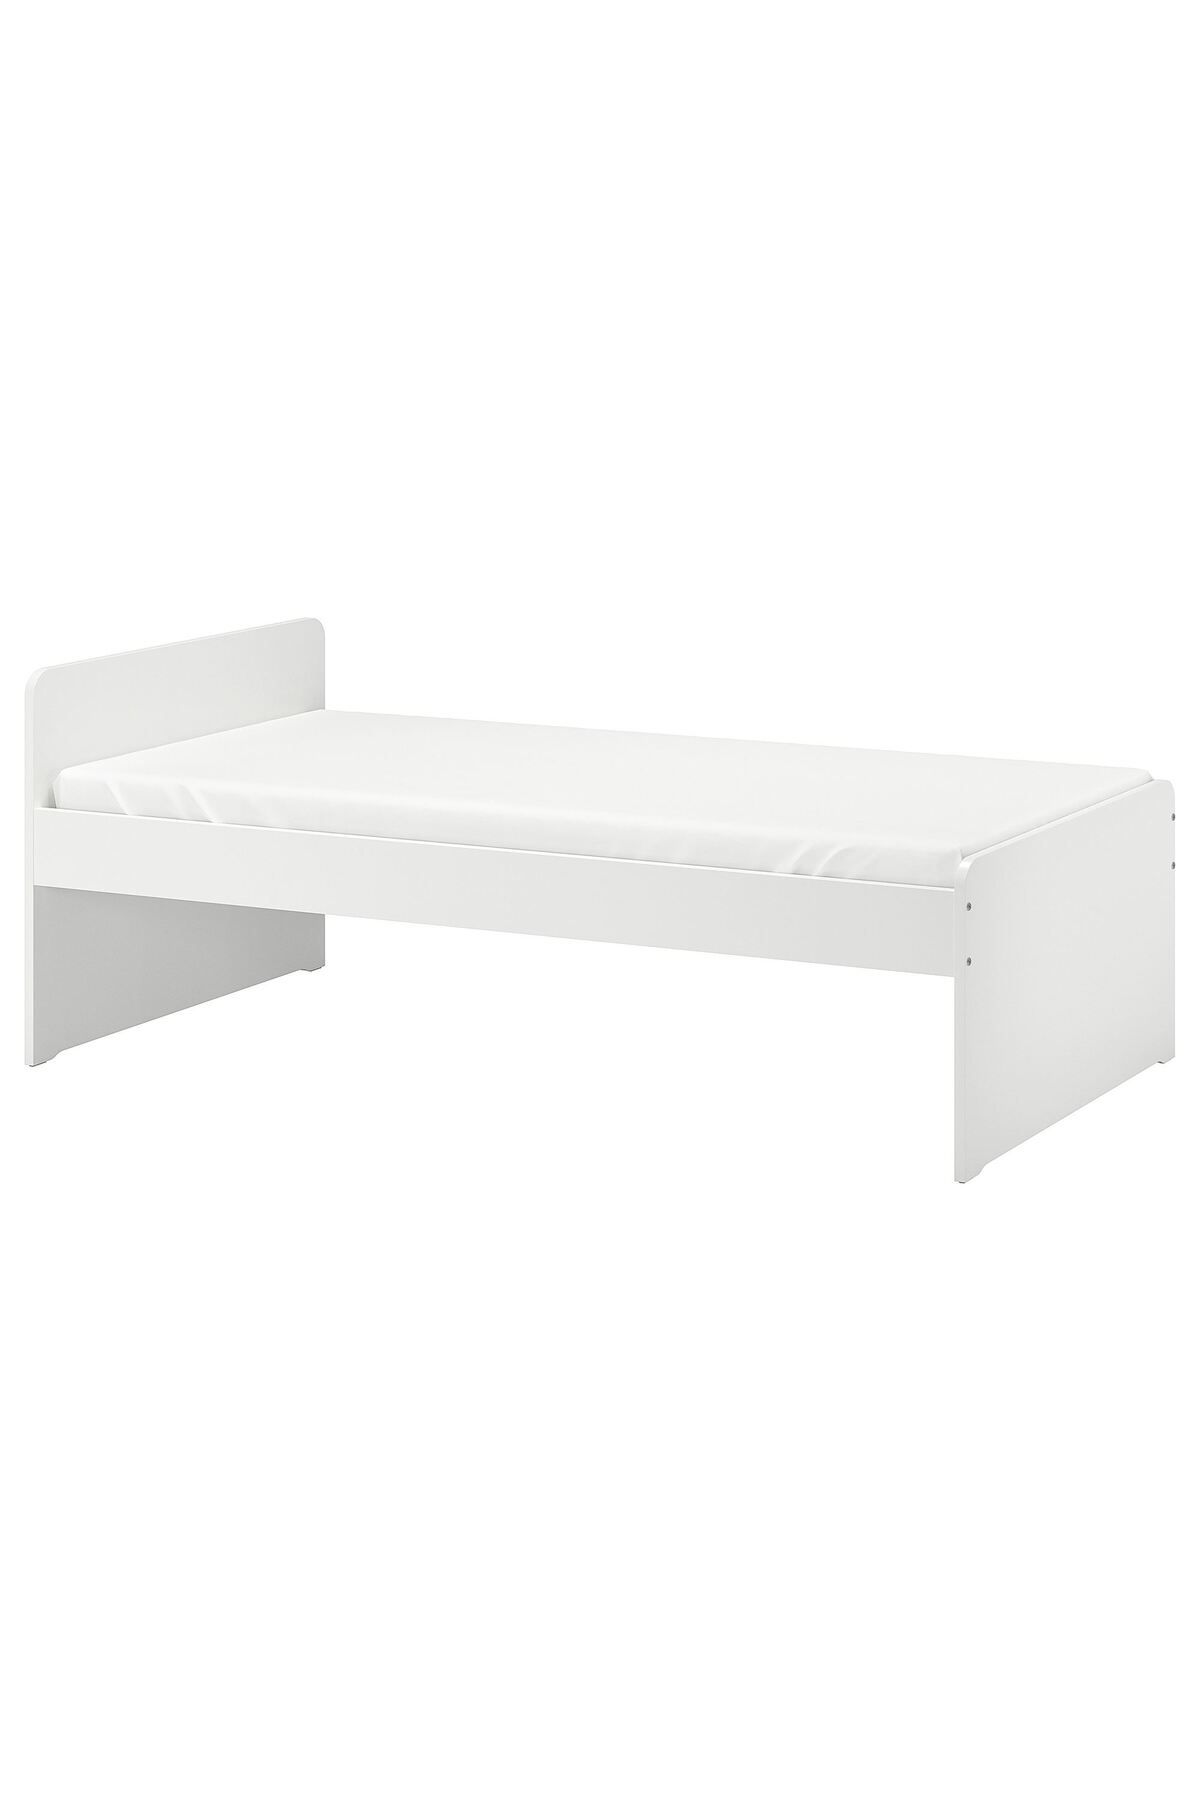 IKEA tek kişilik karyola, beyaz, 90x200 cm